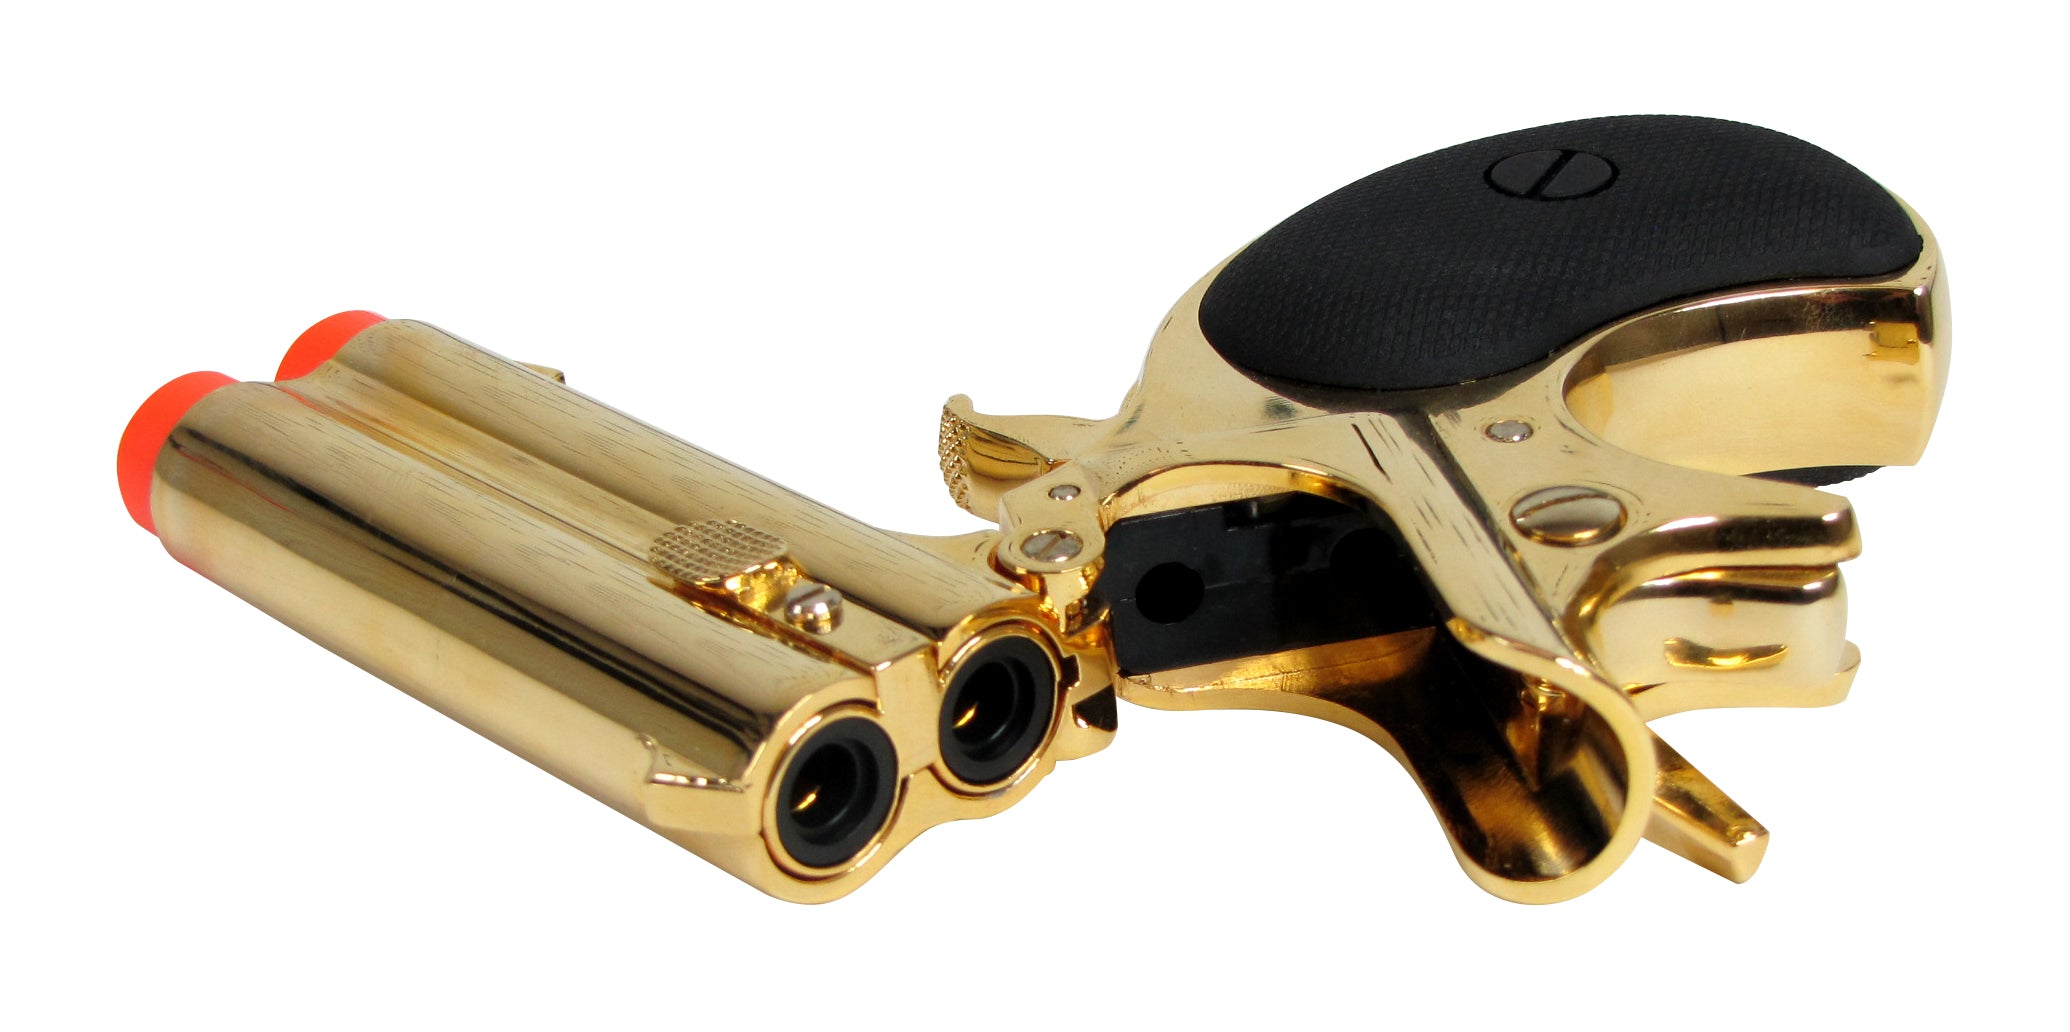 Max Tact 6mm Full Metal Double Barrel Derringer Gas Non-Blowback (Gold) - ssairsoft.com